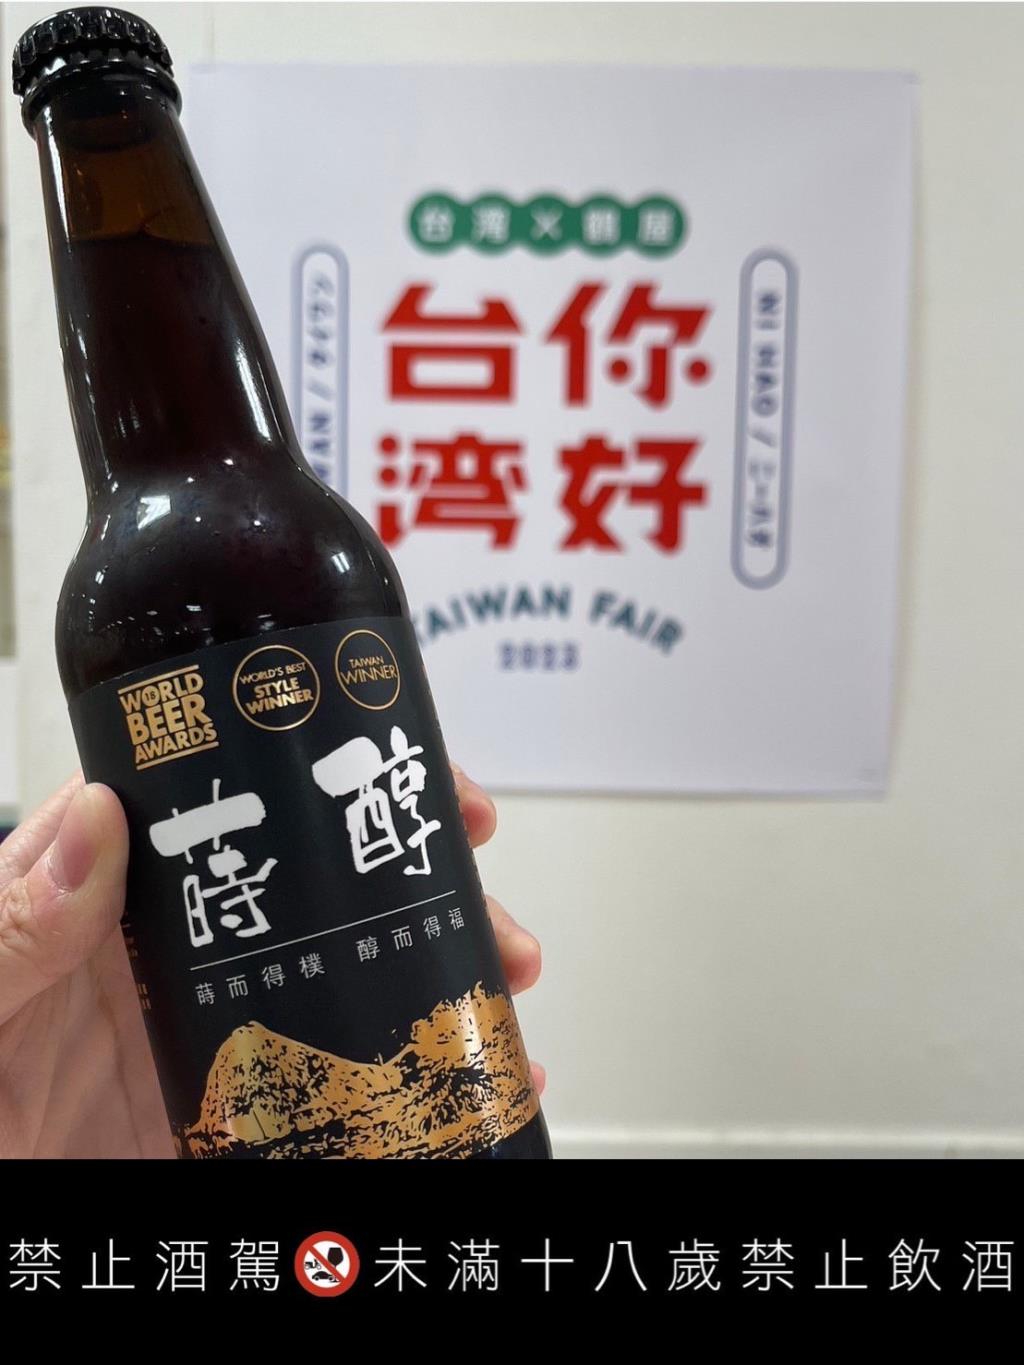 世界冠軍啤酒「蒔醇」再次閃耀國際 榮登日本國際亞洲展！